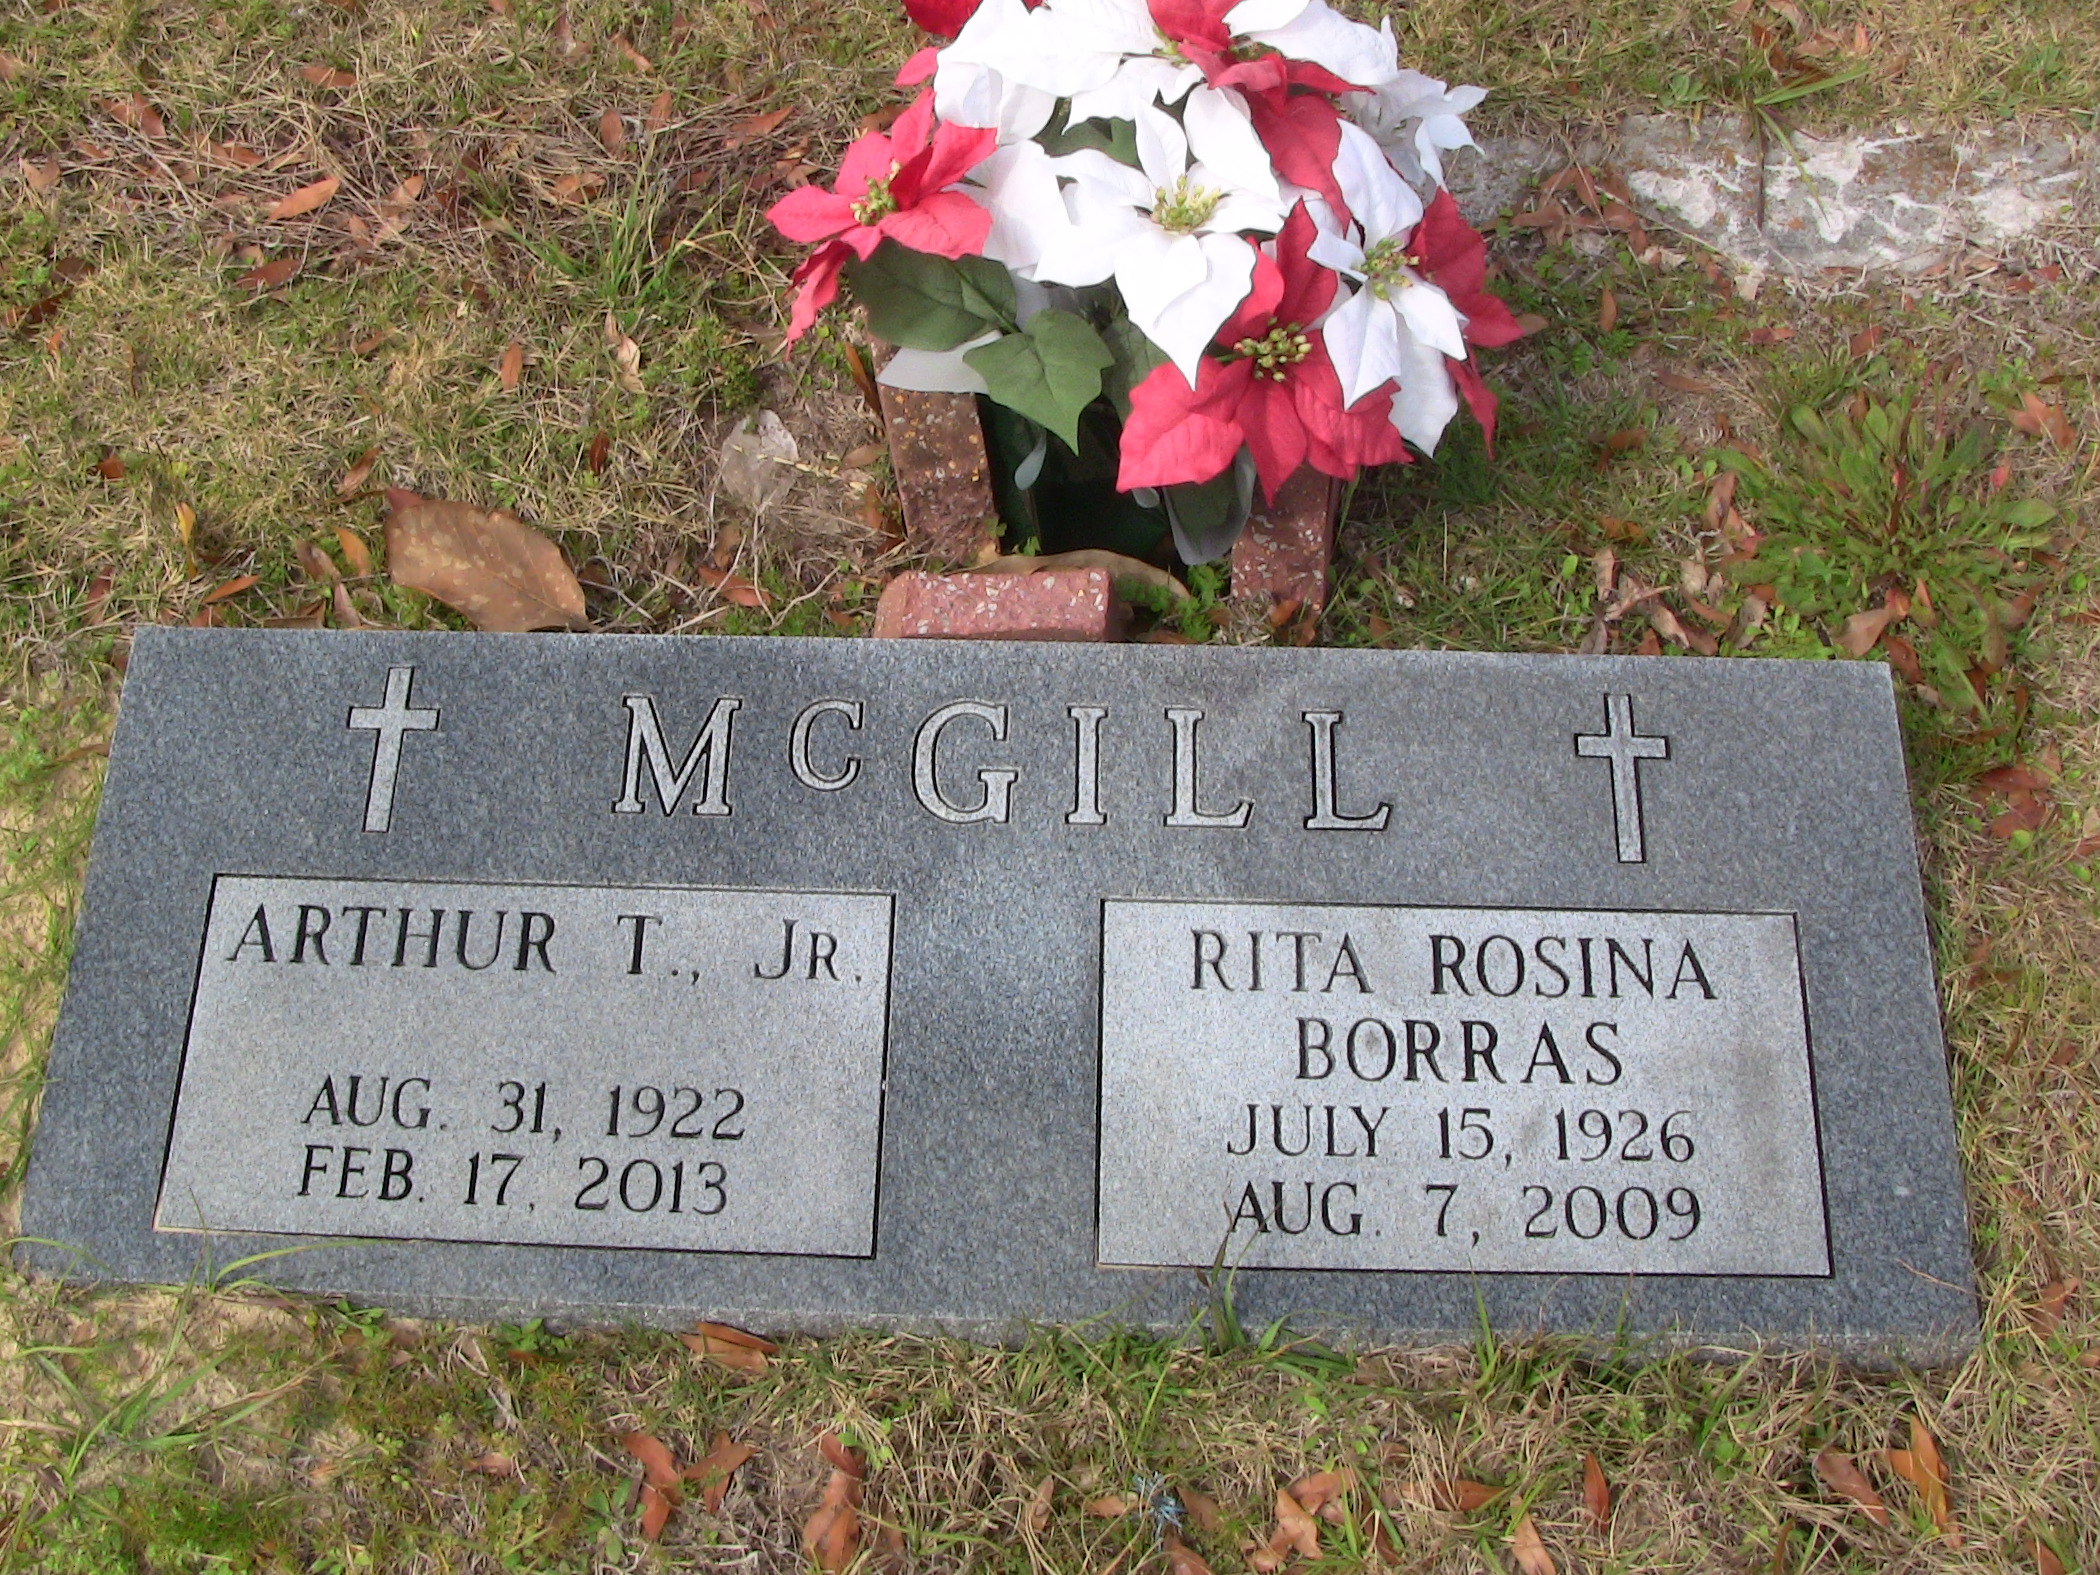 Rita Rosina Borras McGill